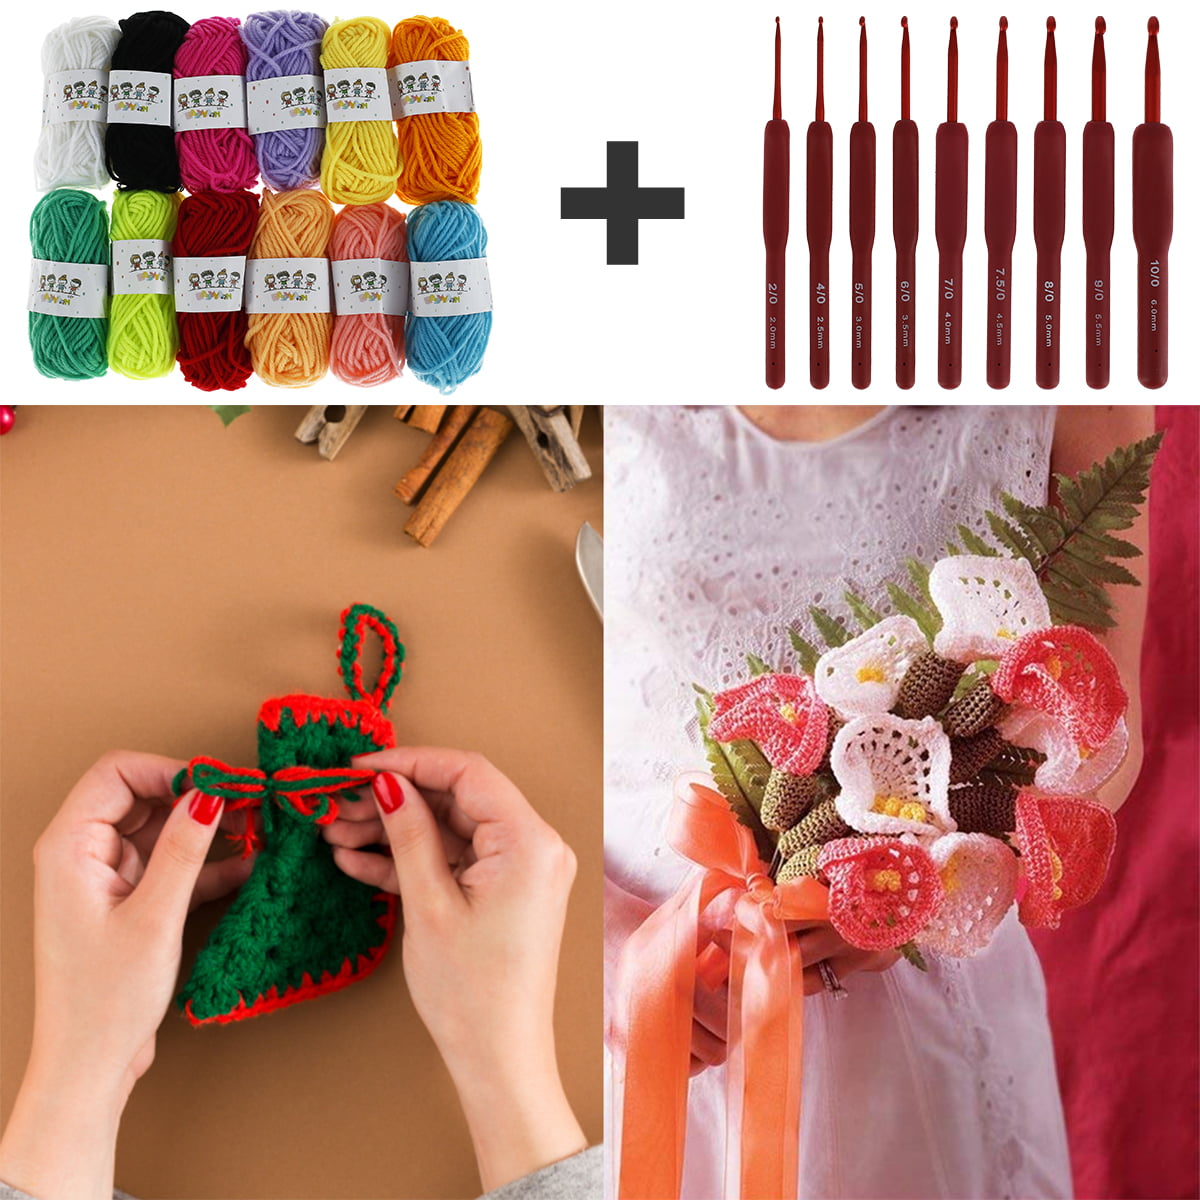 79/82PCS CROCHET KITS for Beginners Colorful Crochet Hook Set with Storage  AU $31.63 - PicClick AU